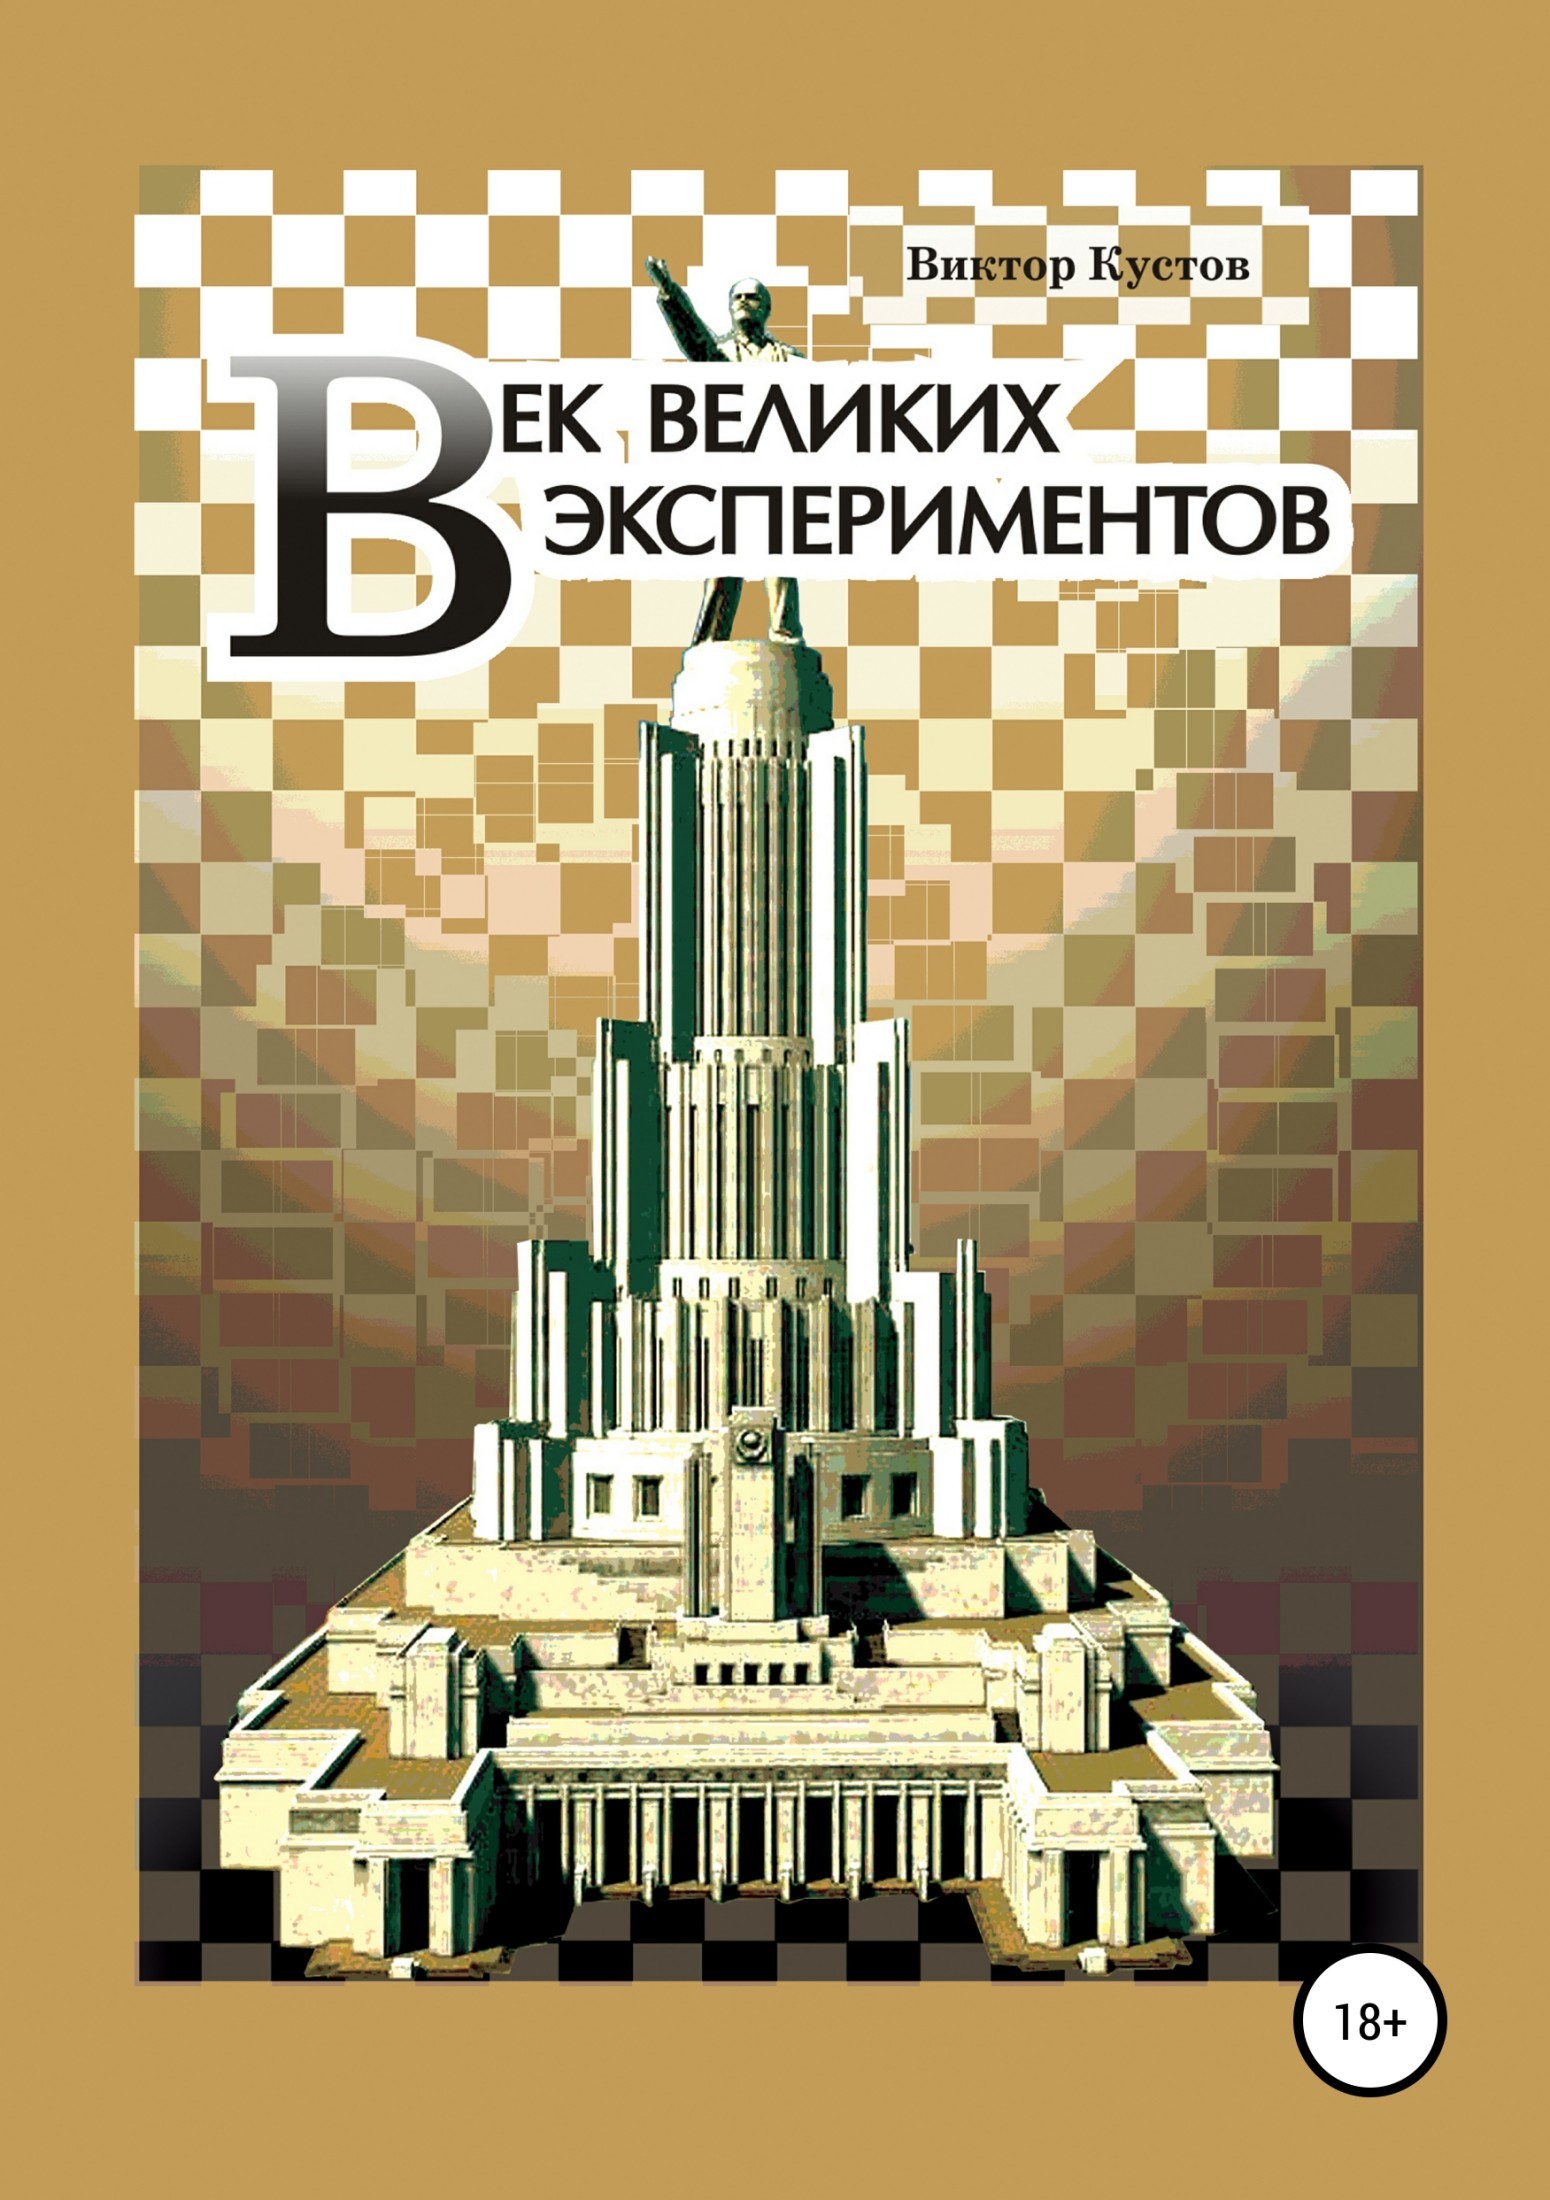 Книга Век великих экспериментов из серии , созданная Виктор Кустов, может относится к жанру Публицистика: прочее. Стоимость электронной книги Век великих экспериментов с идентификатором 38008920 составляет 99.90 руб.